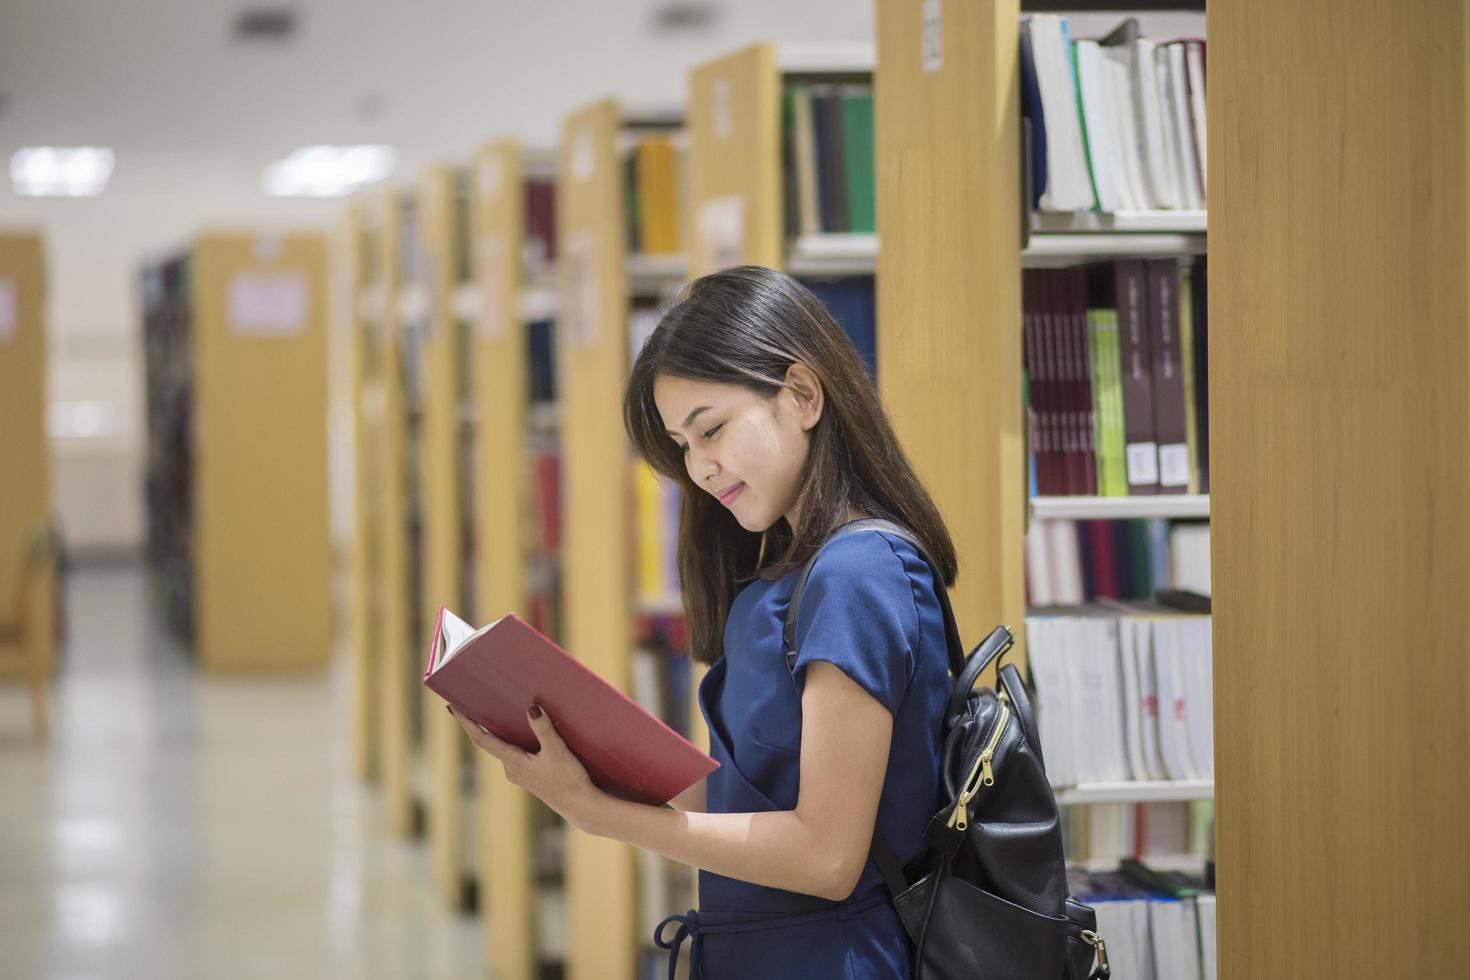 hermosa mujer asiática estudiante universitario en la biblioteca foto